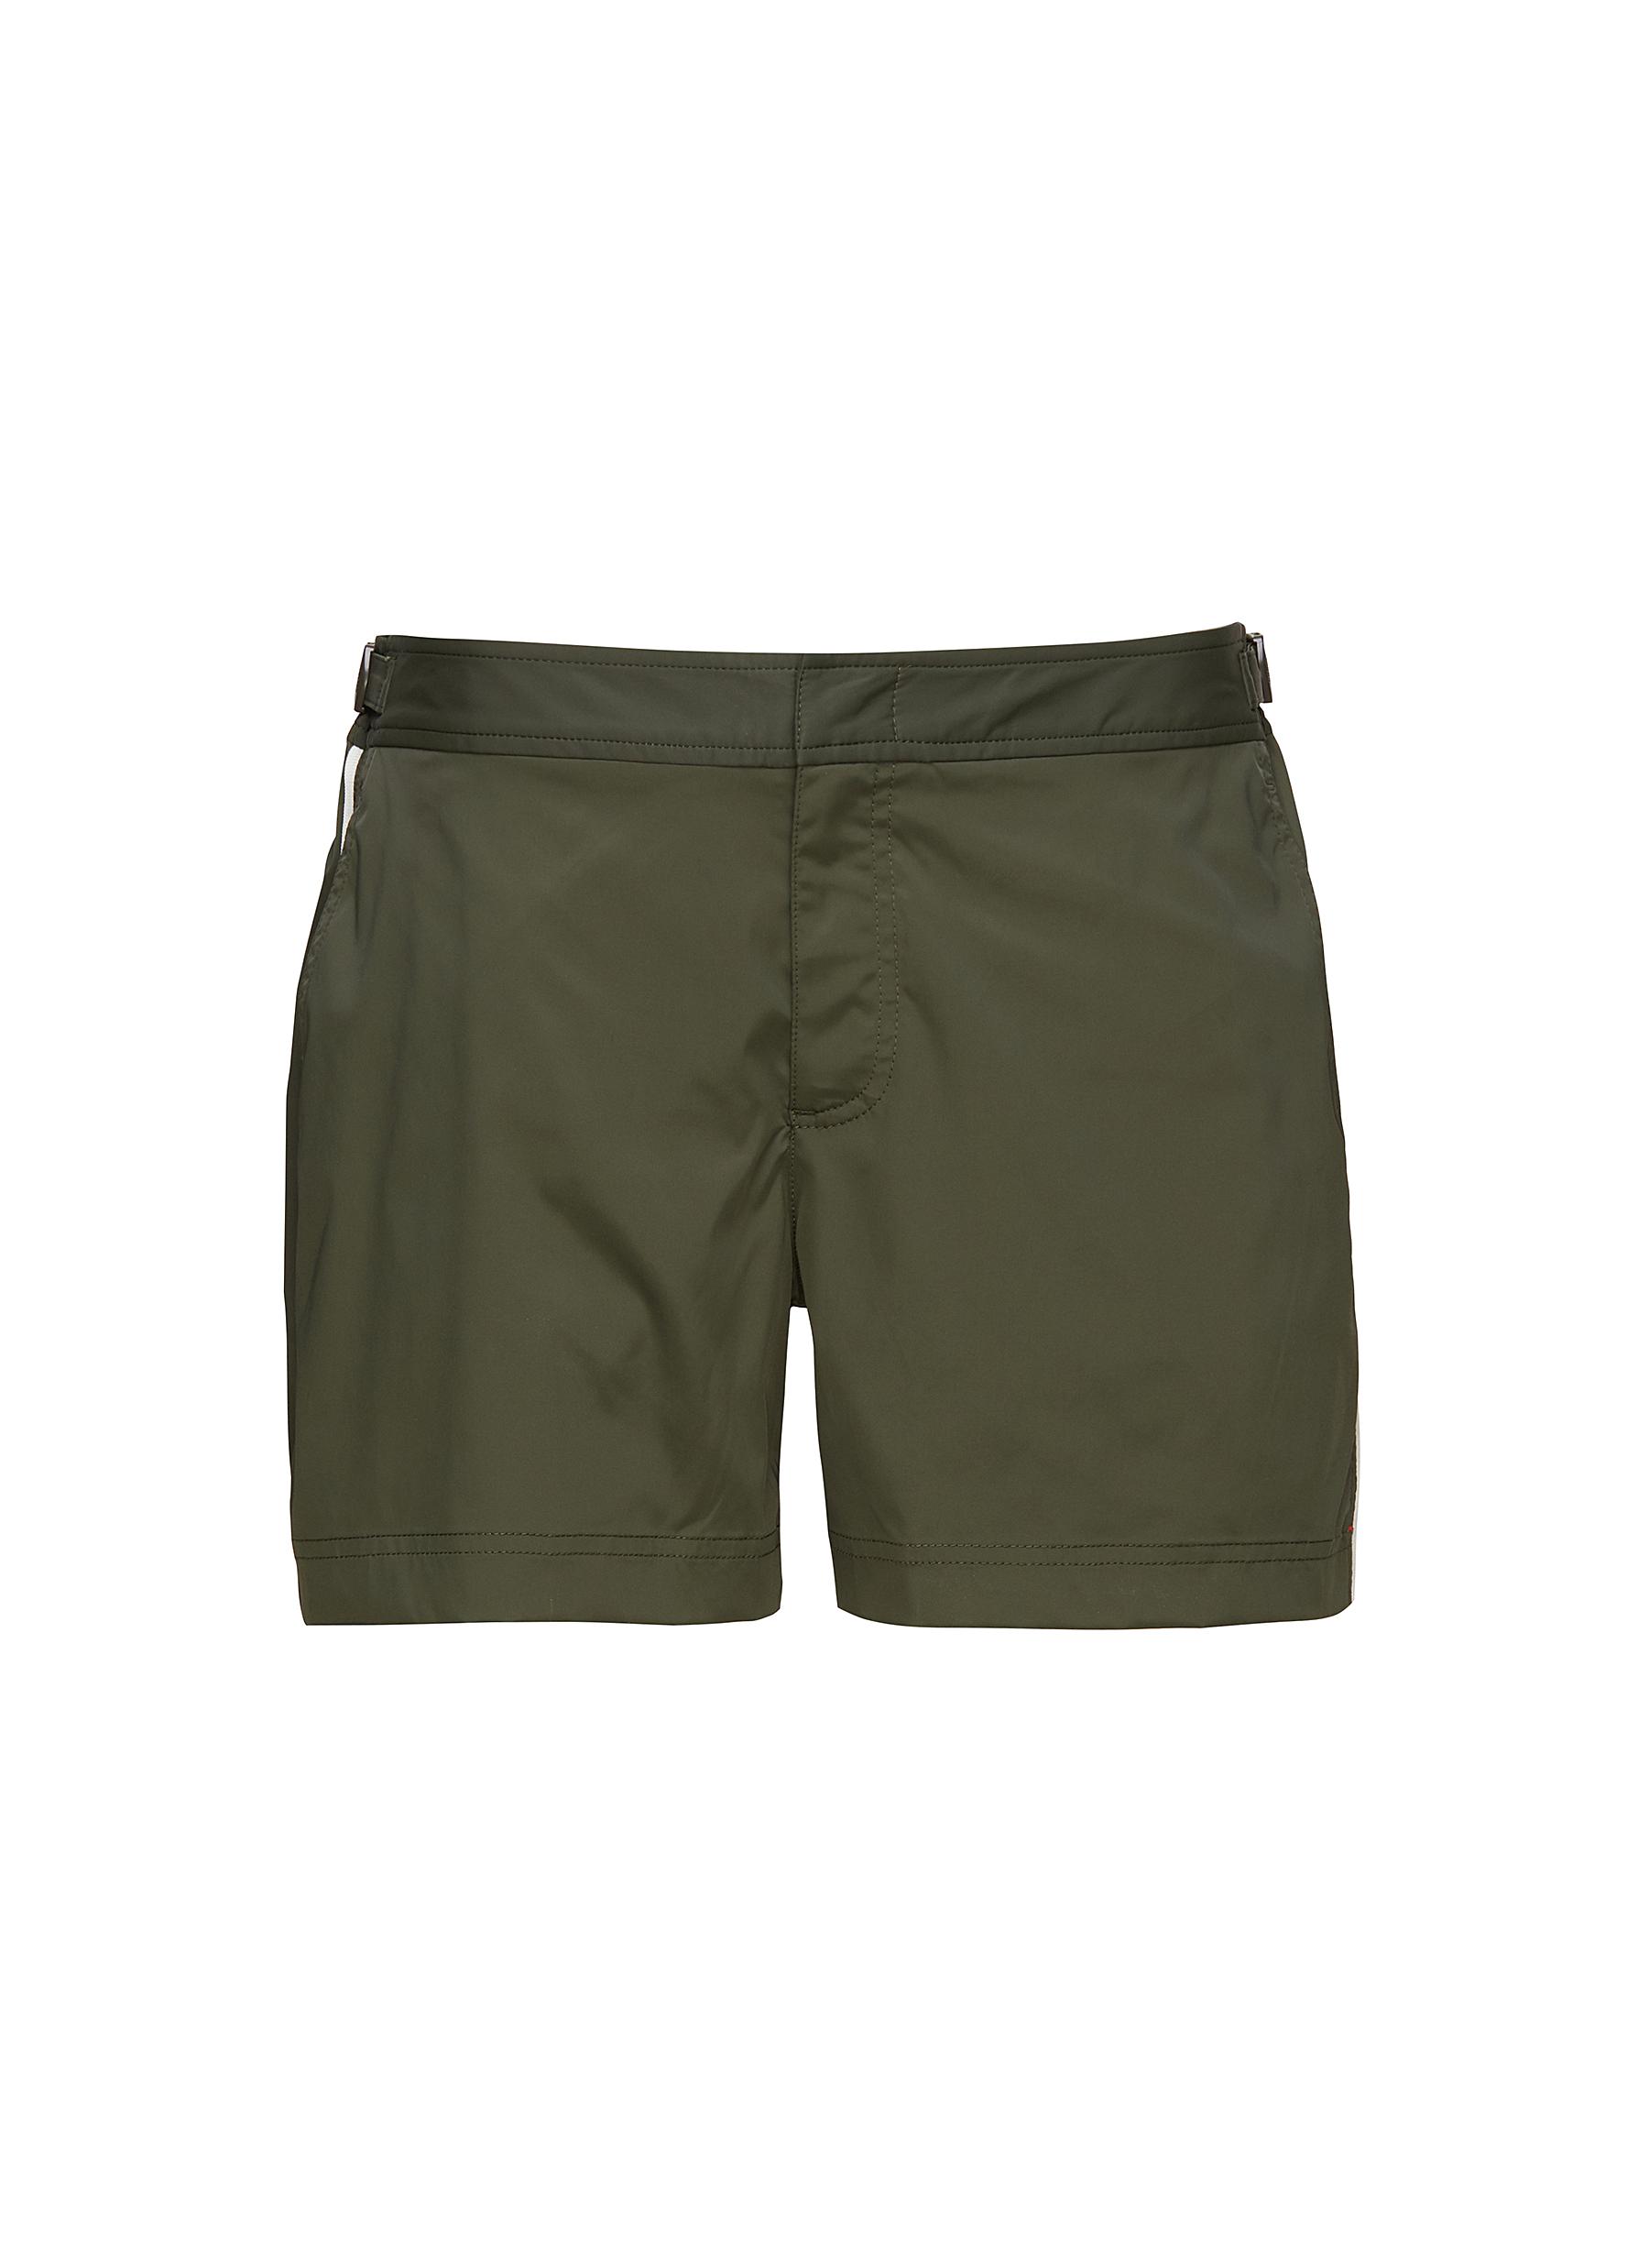 Orlebar Brown Setter - Shimmer Sunny Paisley Shorter-Length Swim Shorts